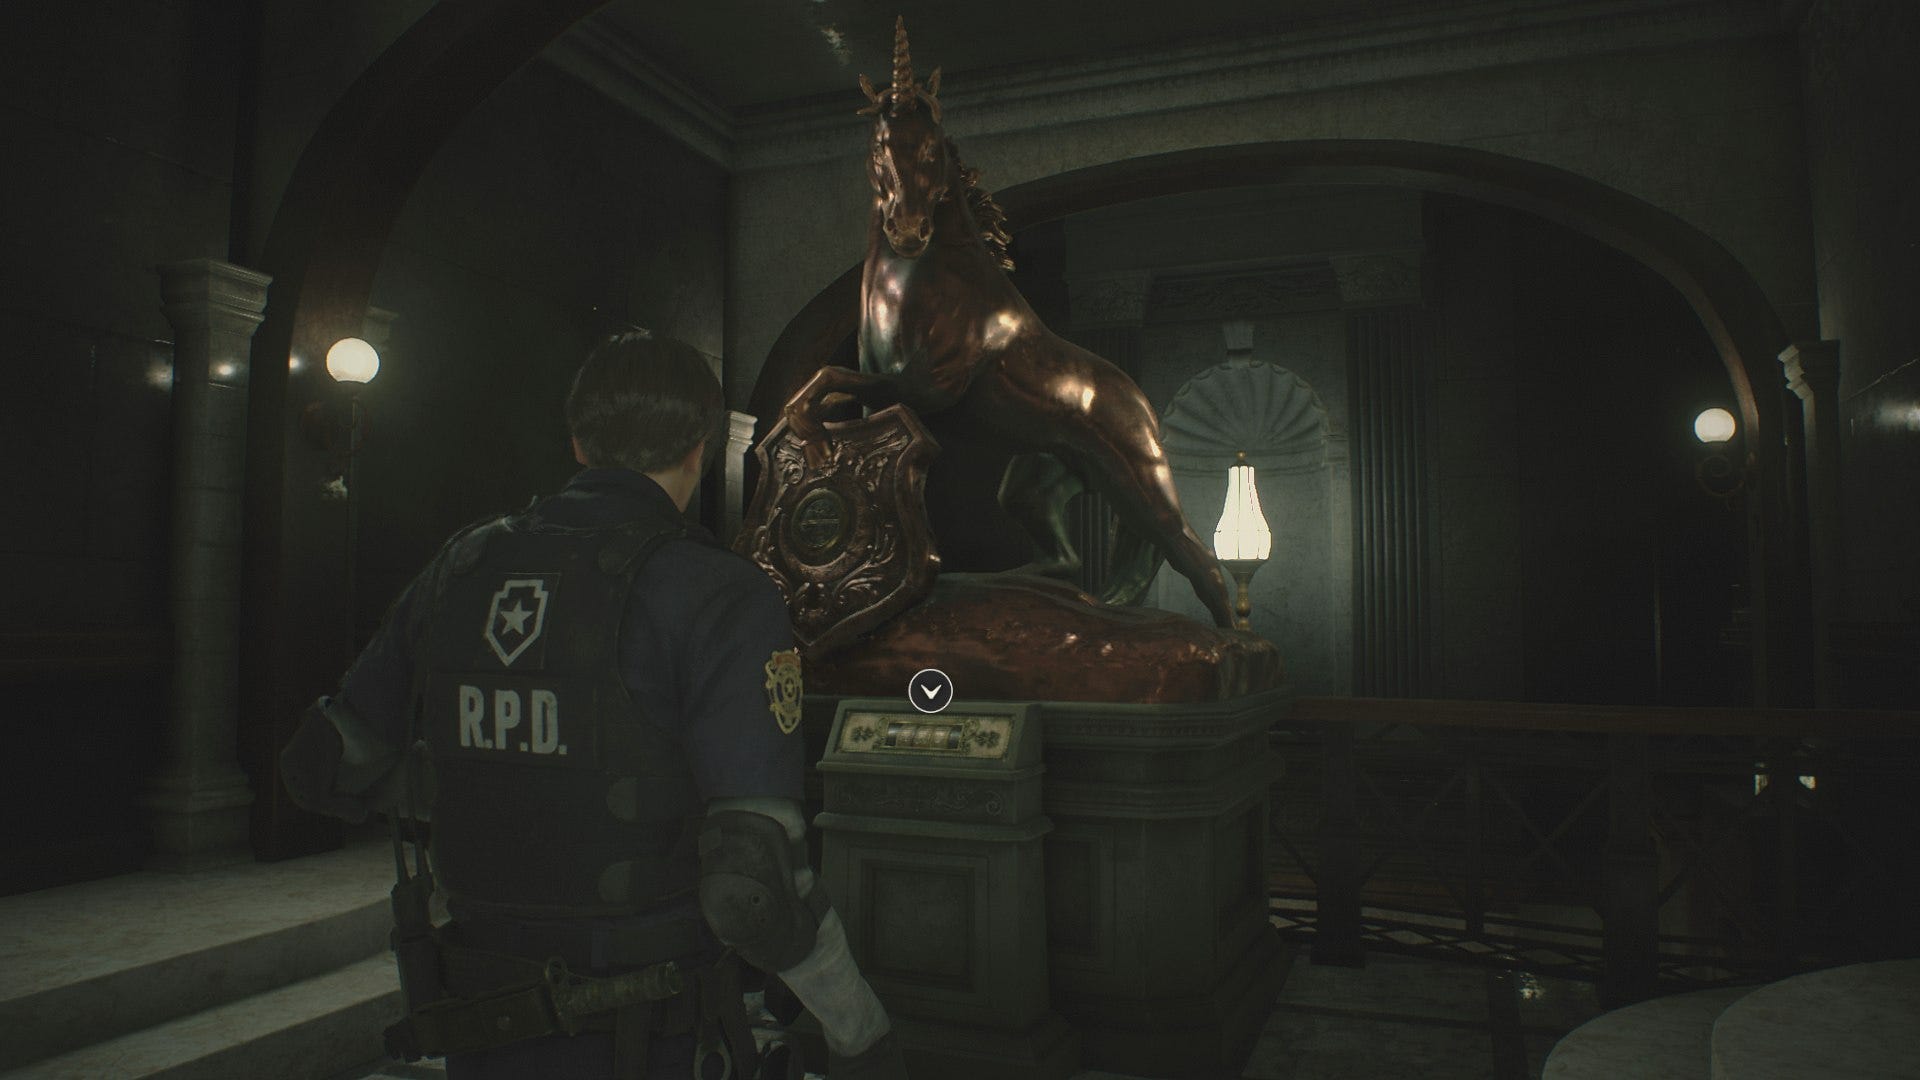 Единорог resident evil. Статуя Льва Resident Evil 2 Remake. Статуя Льва Resident Evil 2 Remake Клер. Резидент ивел 2 ремейк медальоны.